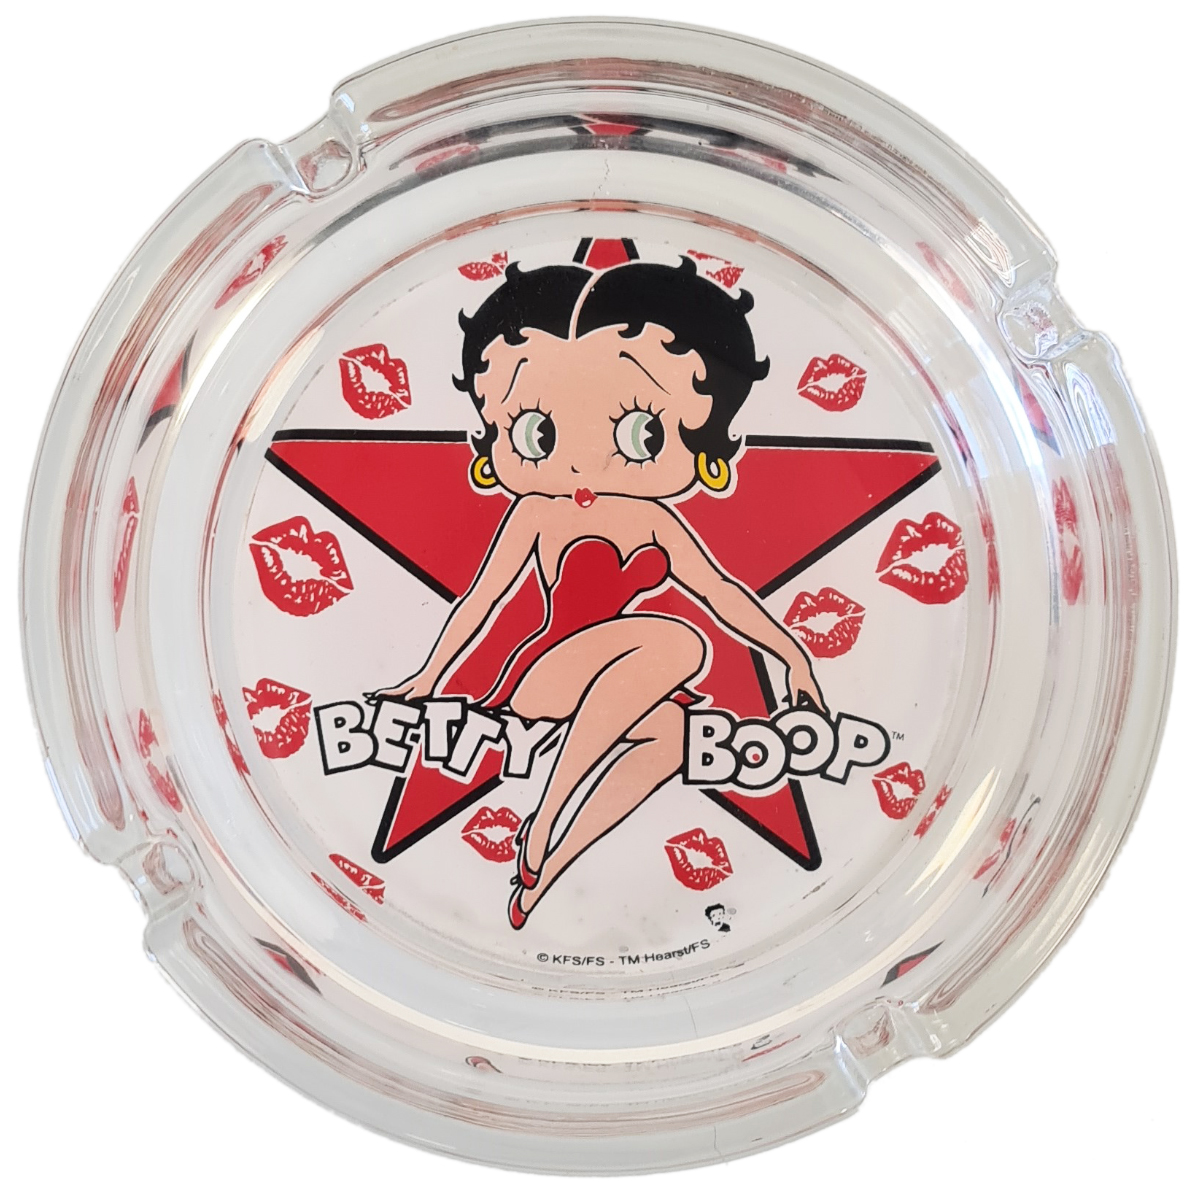 Betty Boop ashtray